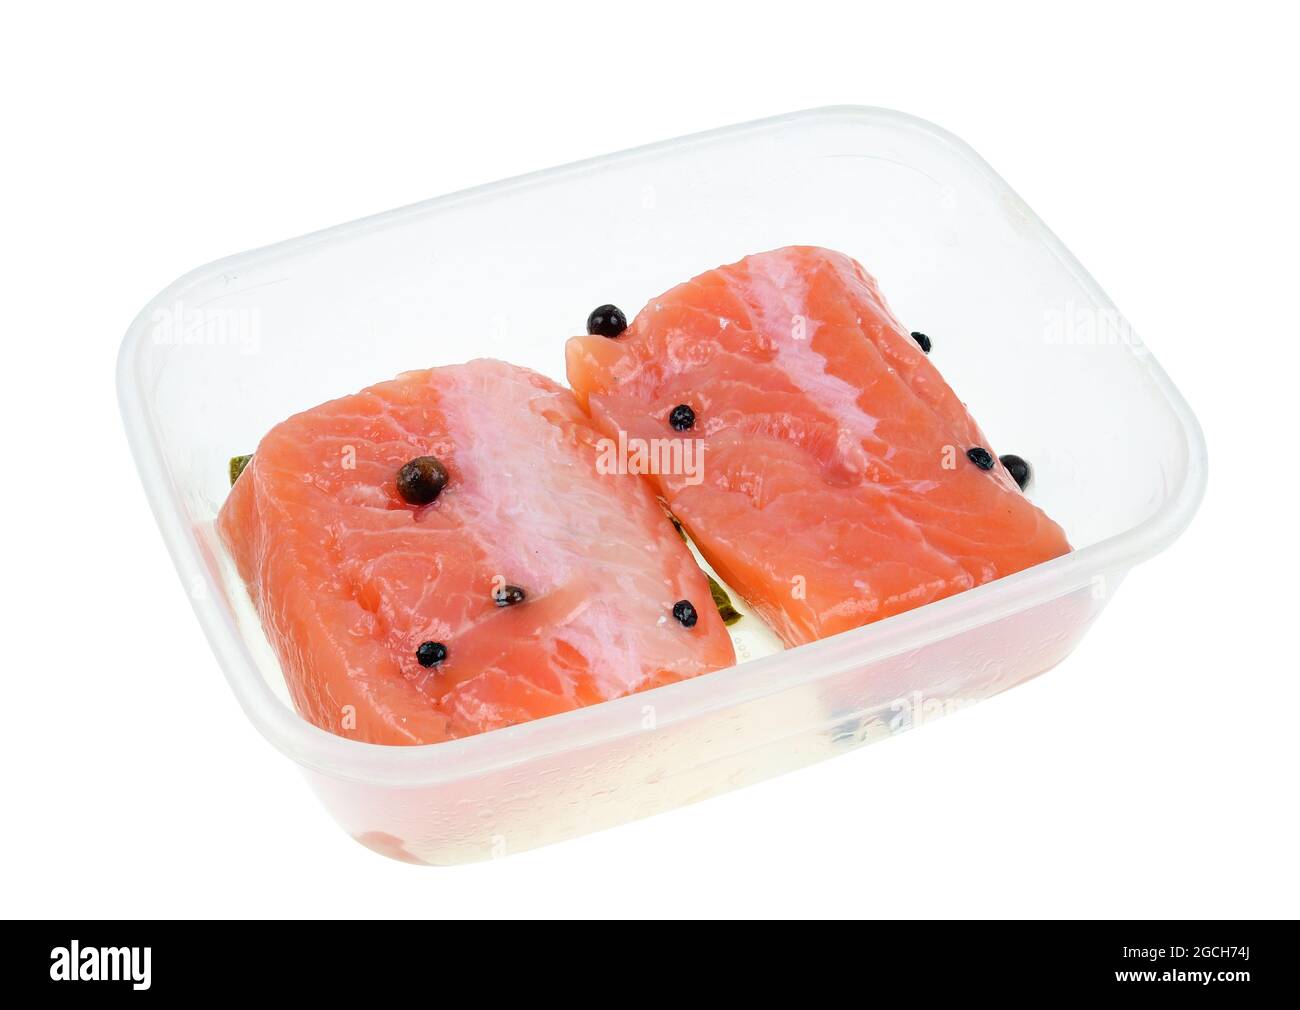 Pezzo di filetto di salmone norvegese salato fatto a mano in scatola. Isolato su macro studio bianco Foto Stock